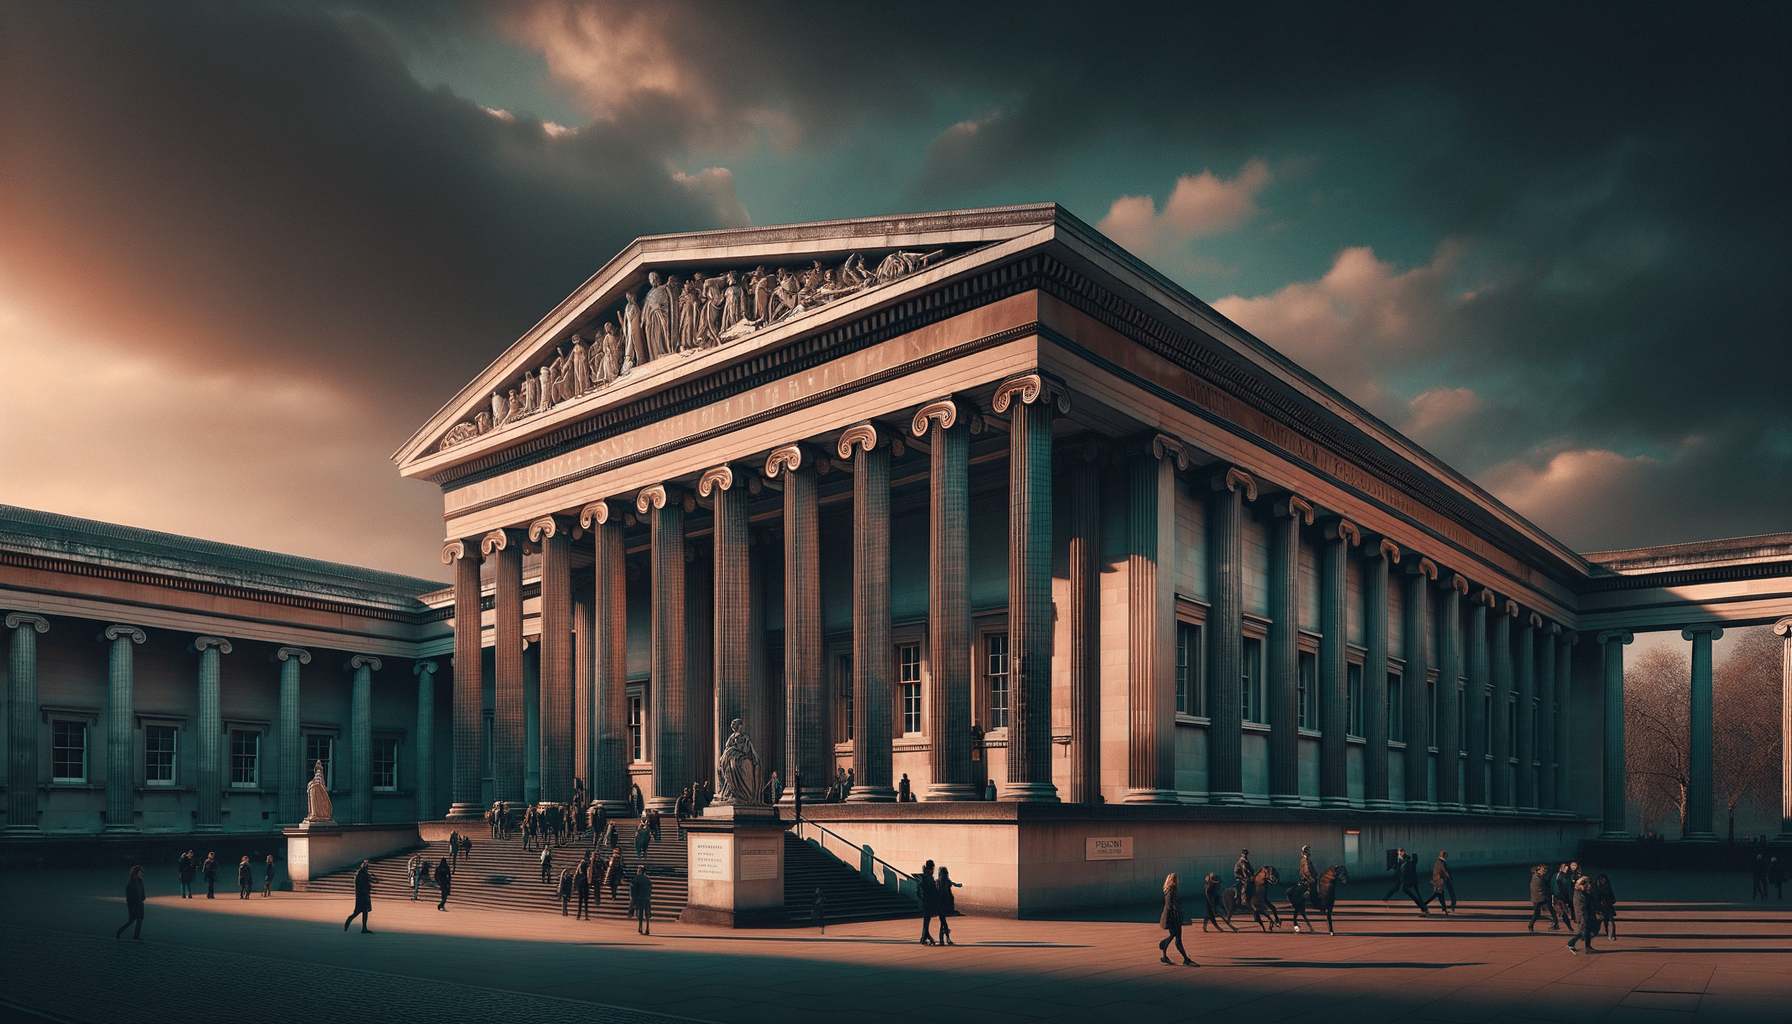 Scopri tutto sul British Museum a Londra: Orari, Biglietti, Opere, indirizzo e orari